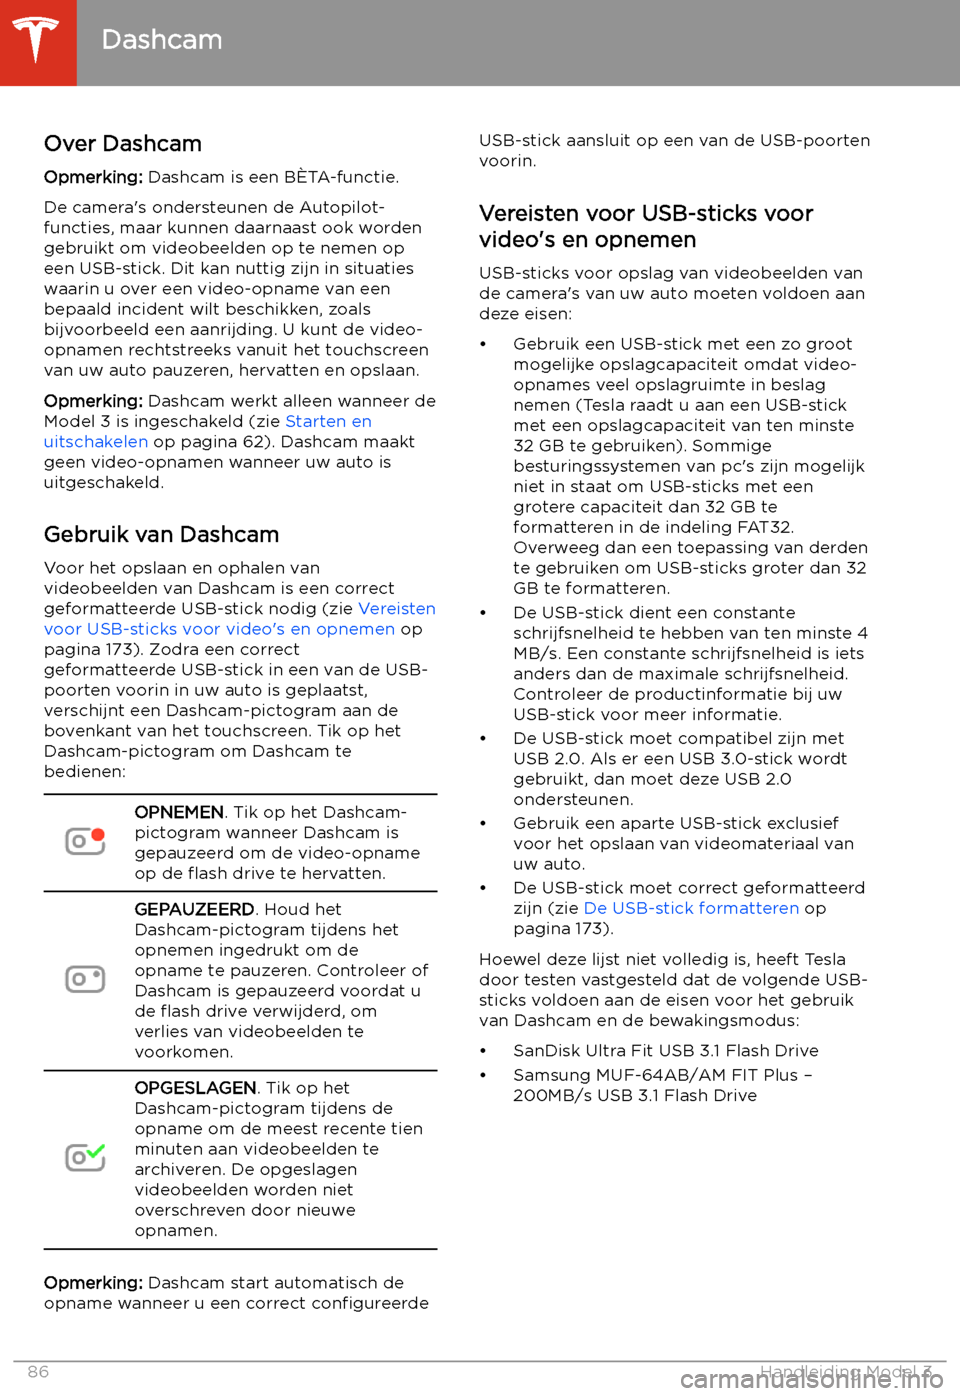 TESLA MODEL 3 2020  Handleiding (in Dutch) Dashcam
Over Dashcam
Opmerking:  Dashcam is een B